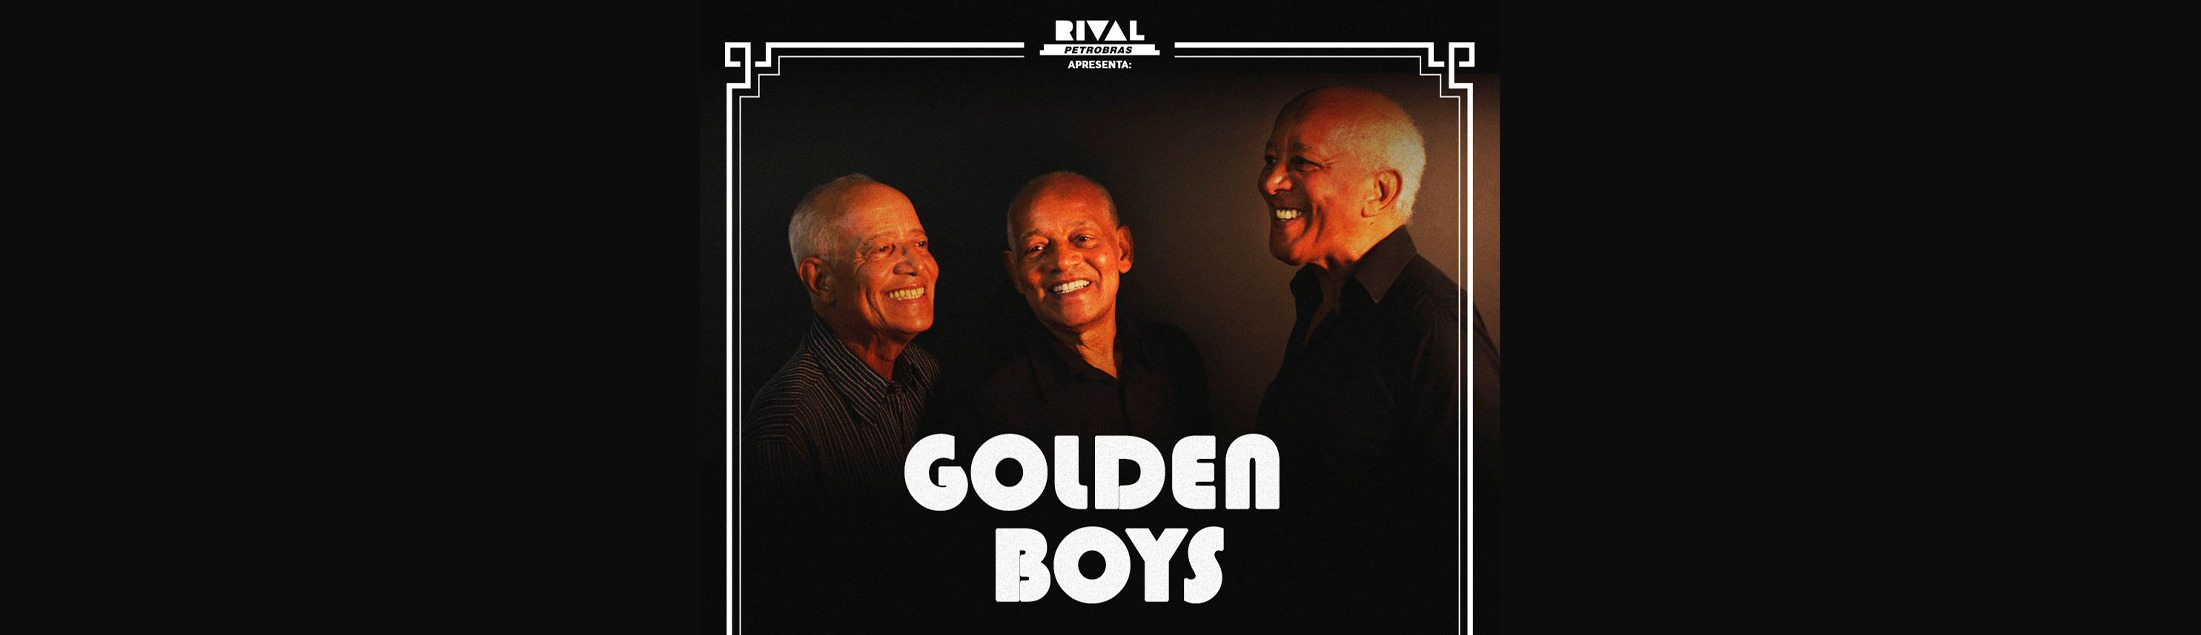 Golden Boys no Teatro Rival